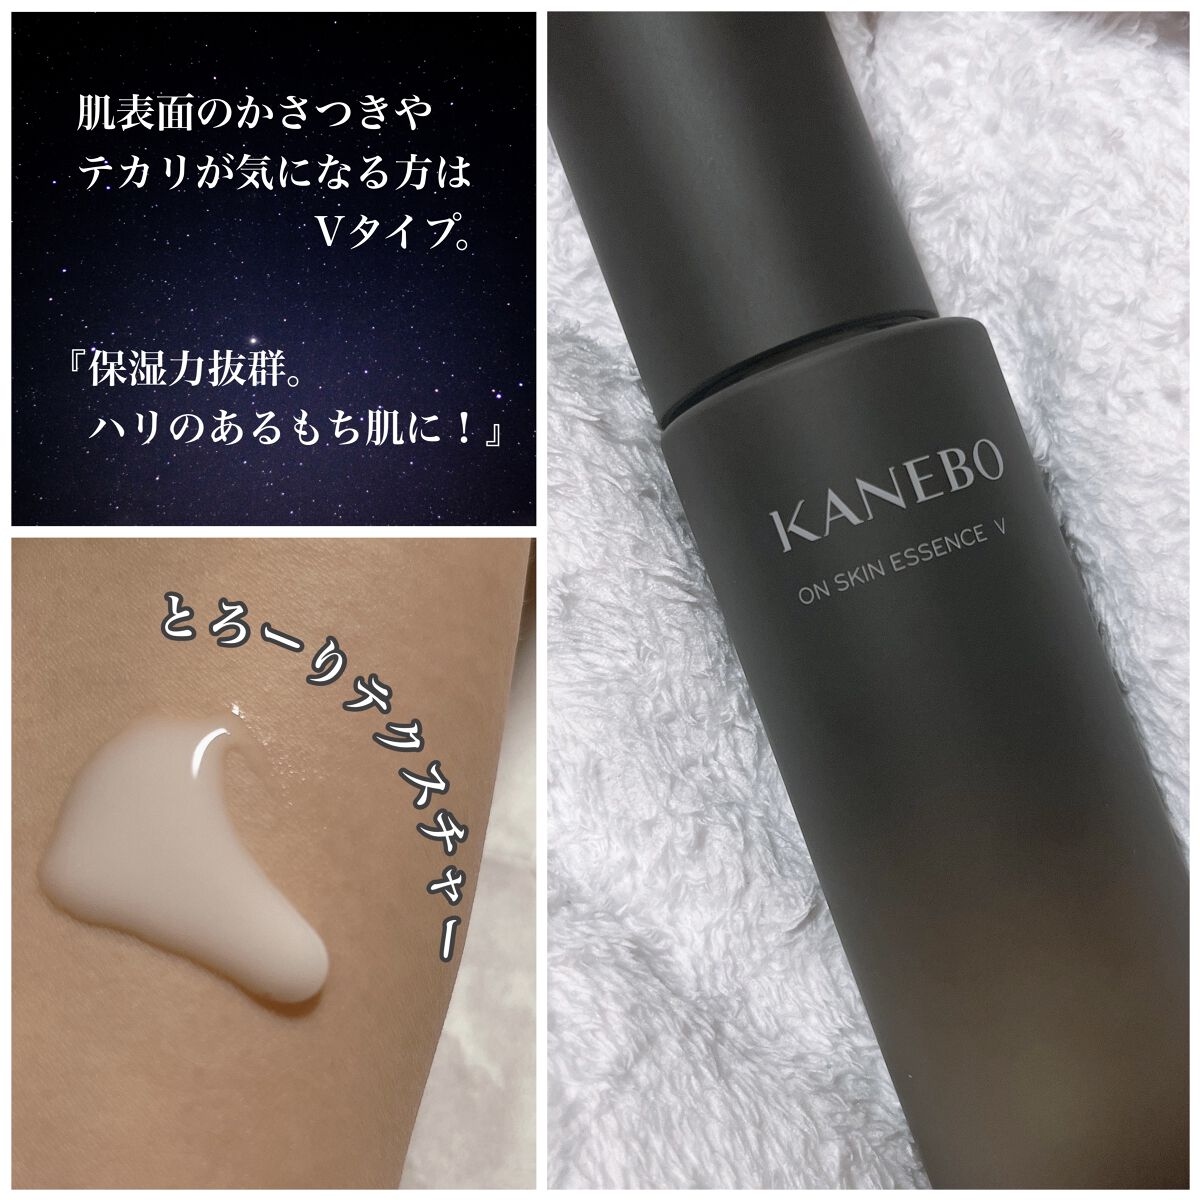 高い品質 KANEBO カネボウ オン スキン エッセンス F 化粧液 サンプル14包